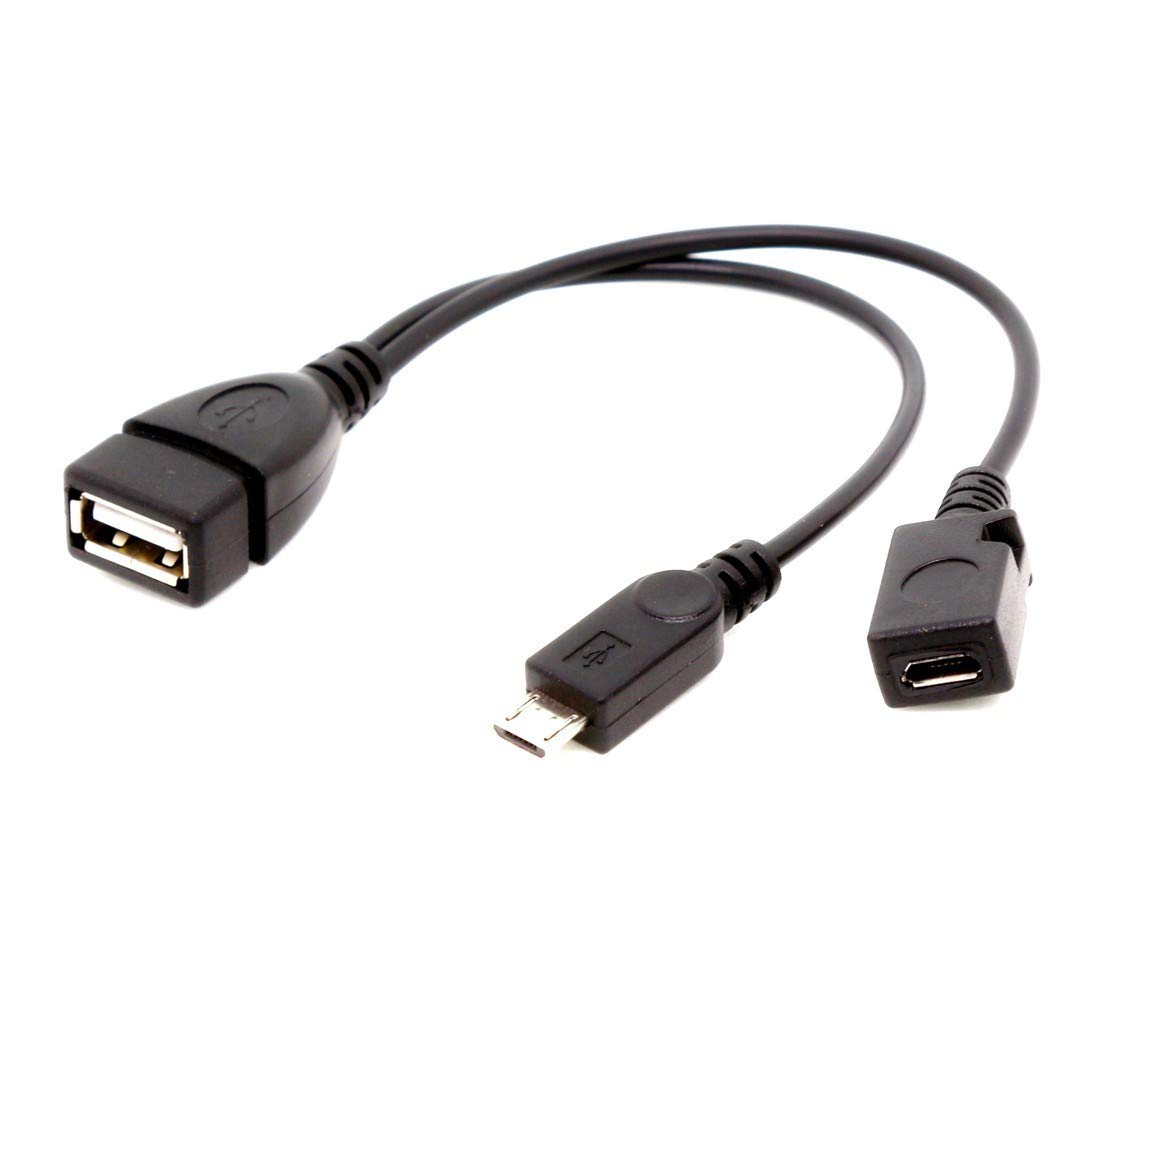 Adaptador de corriente USB 2 en 1 y cable OTG para Fire TV Stick